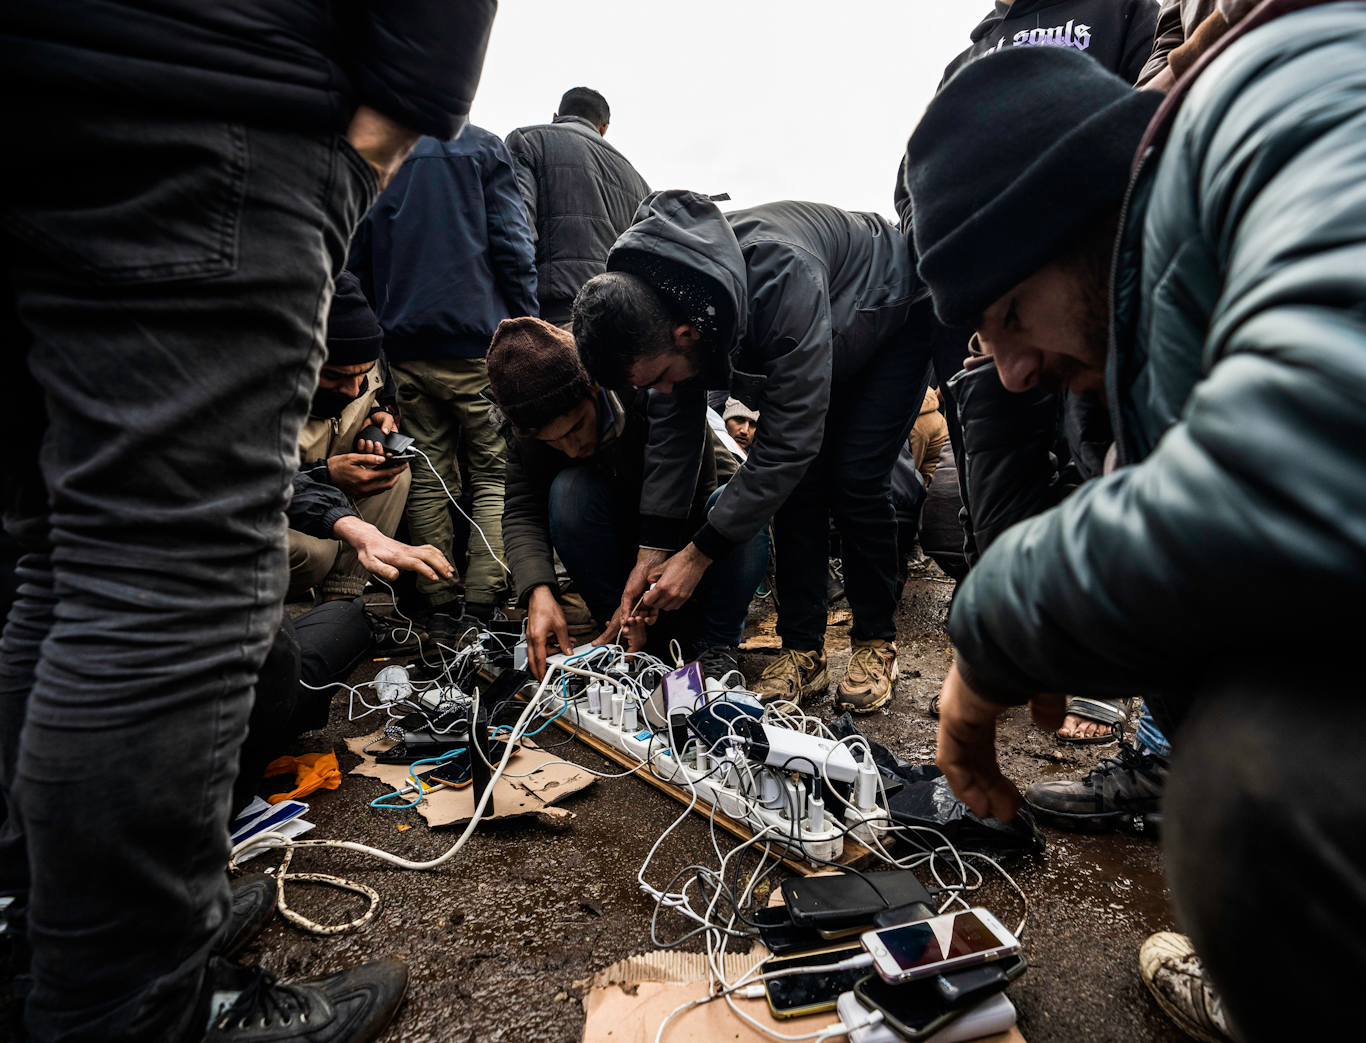 法国敦刻尔克的移民和难民危机——2021 年 12 月 5 日